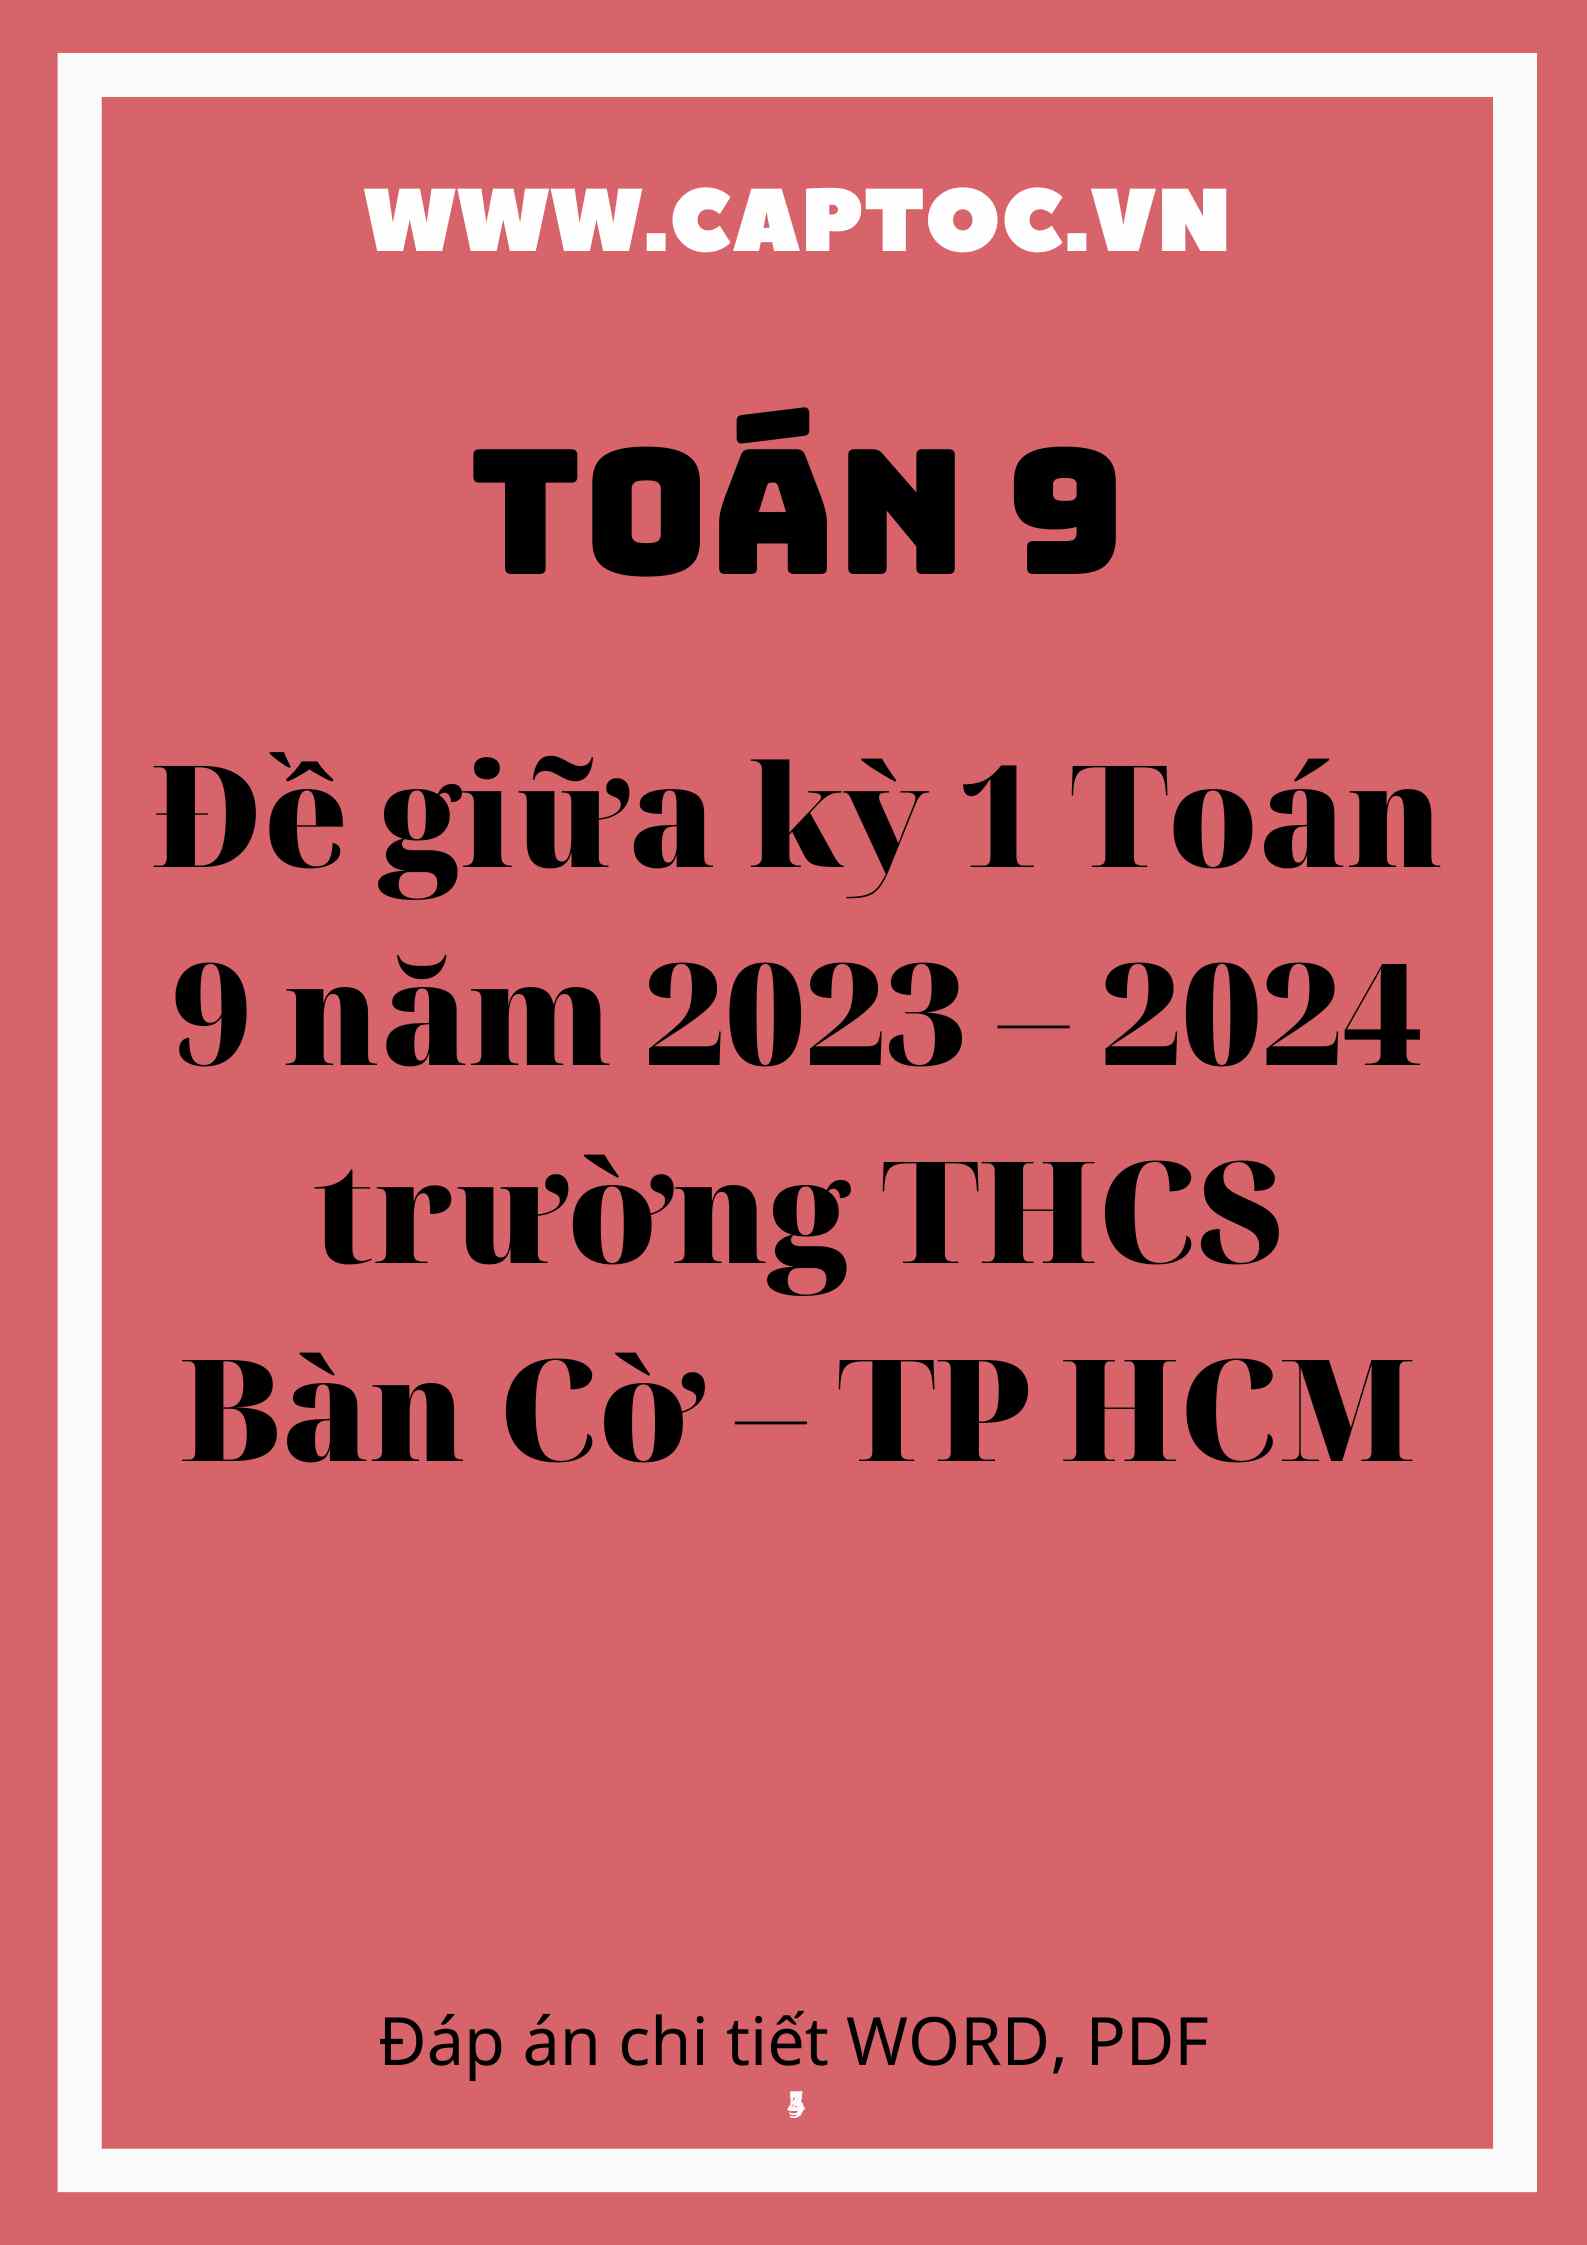 Đề giữa kỳ 1 Toán 9 năm 2023 – 2024 trường THCS Bàn Cờ – TP HCM